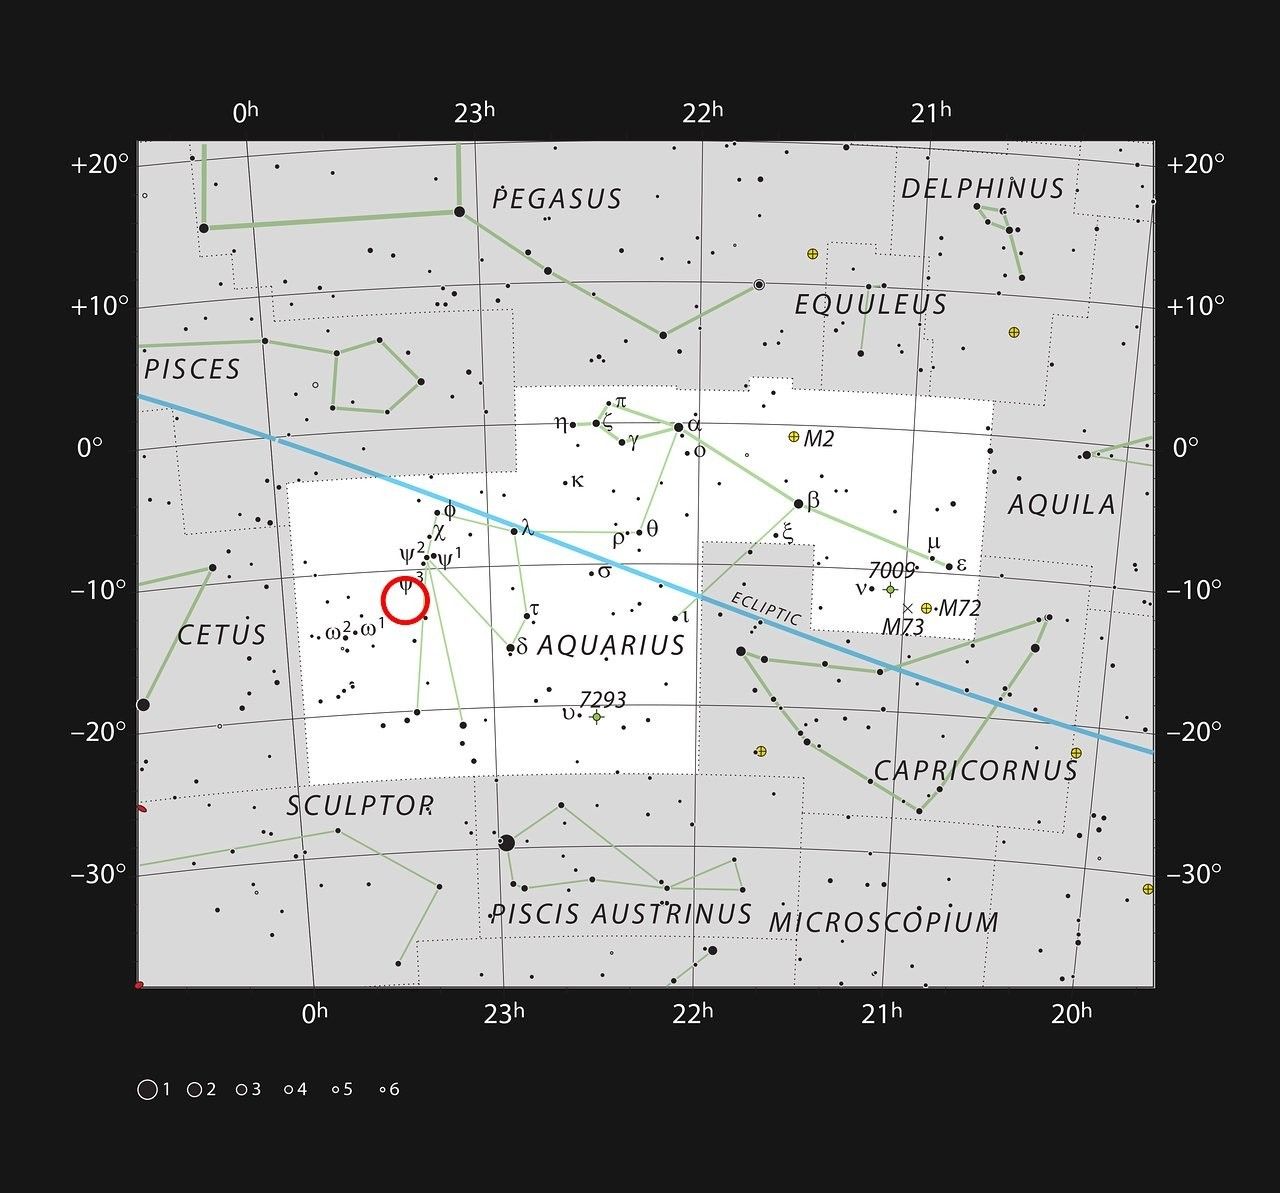 Położenie gromady galaktyk Abell 2597 w Gwiazdozbiorze Wodnika. Ilustracja: ESO, IAU and Sky & Telescope